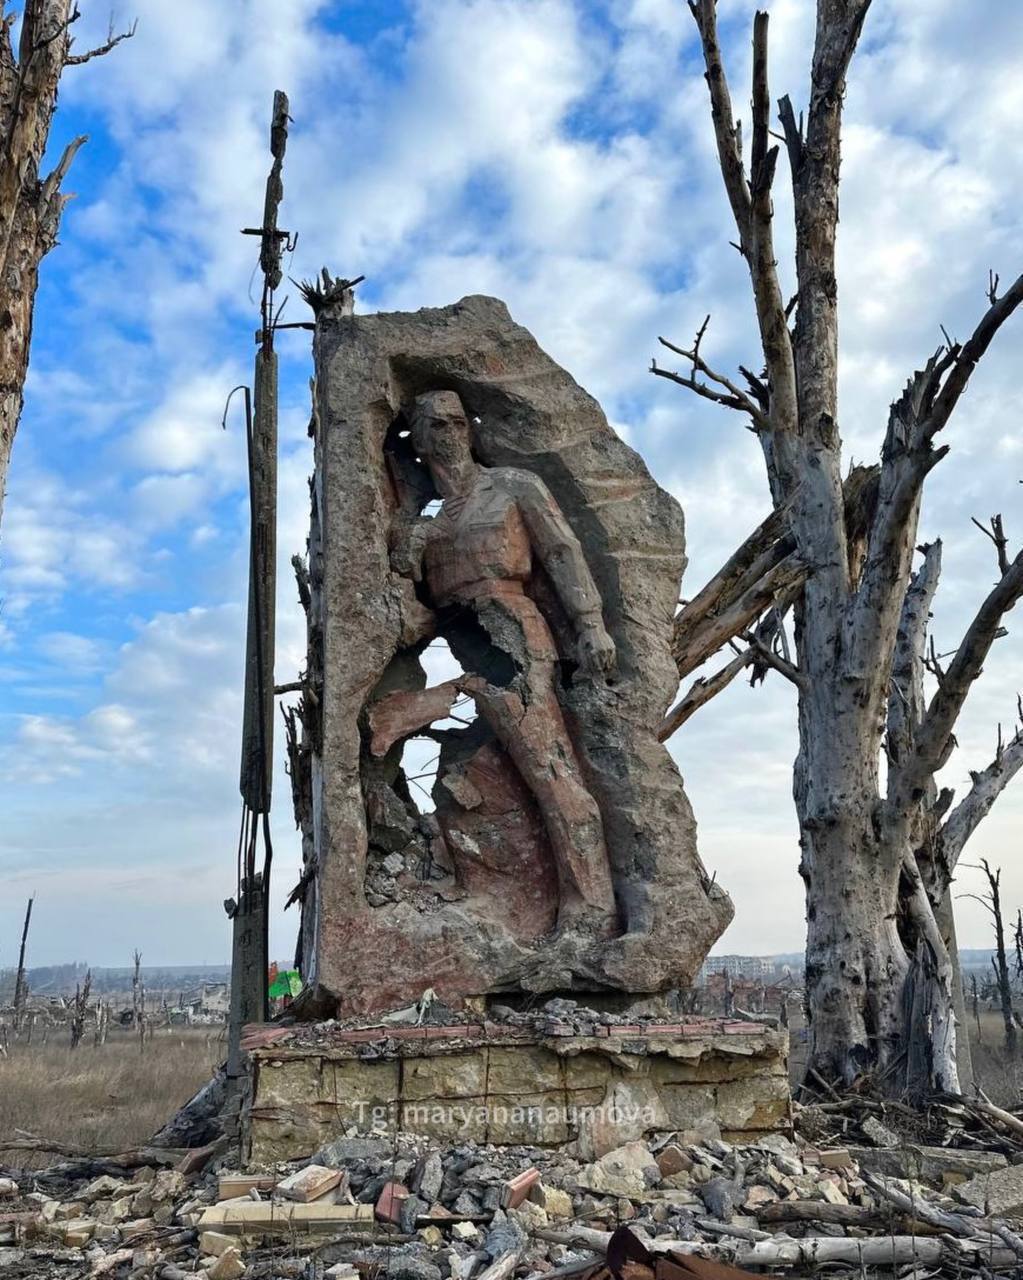 "Звільнення" по-російськи: в мережі показали моторошні фото зі зруйнованої окупантами Мар'їнки 